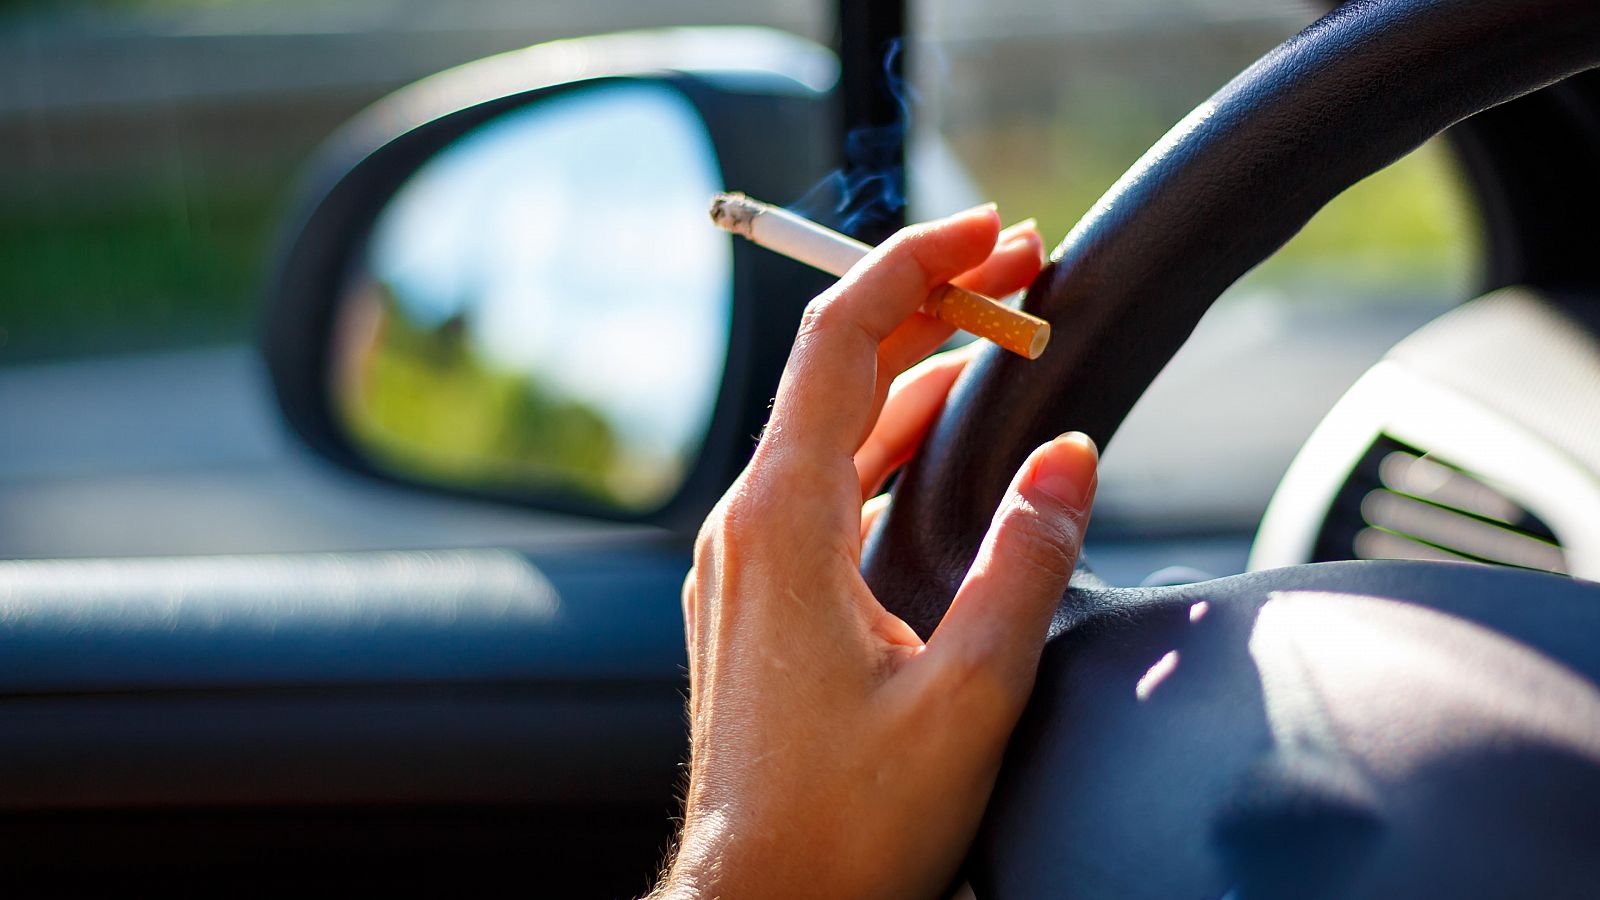 14 horas - Sanidad plantea prohibir fumar dentro del coche y ampliar las restricciones a los cigarrillos electrónicos - Escuchar ahora